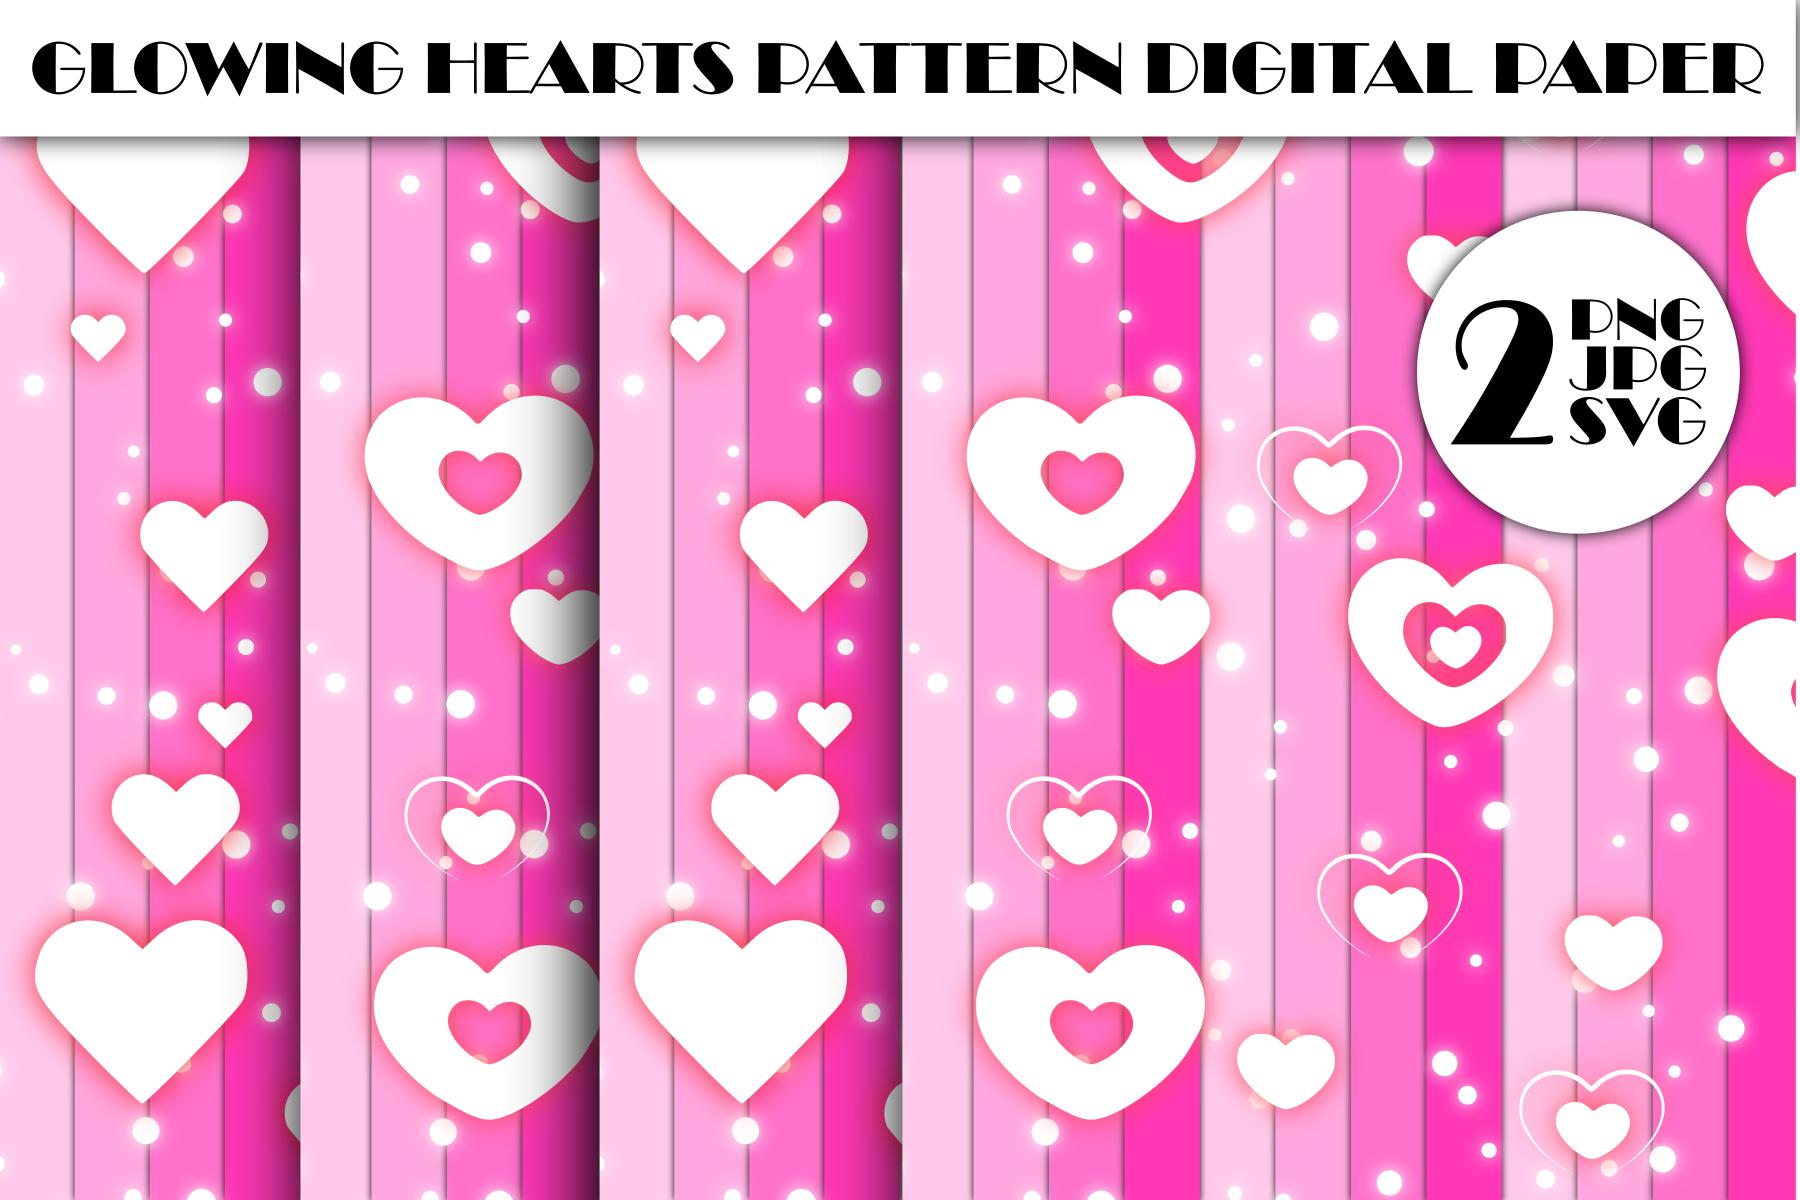 Glowing Hearts Pattern Digital Paper